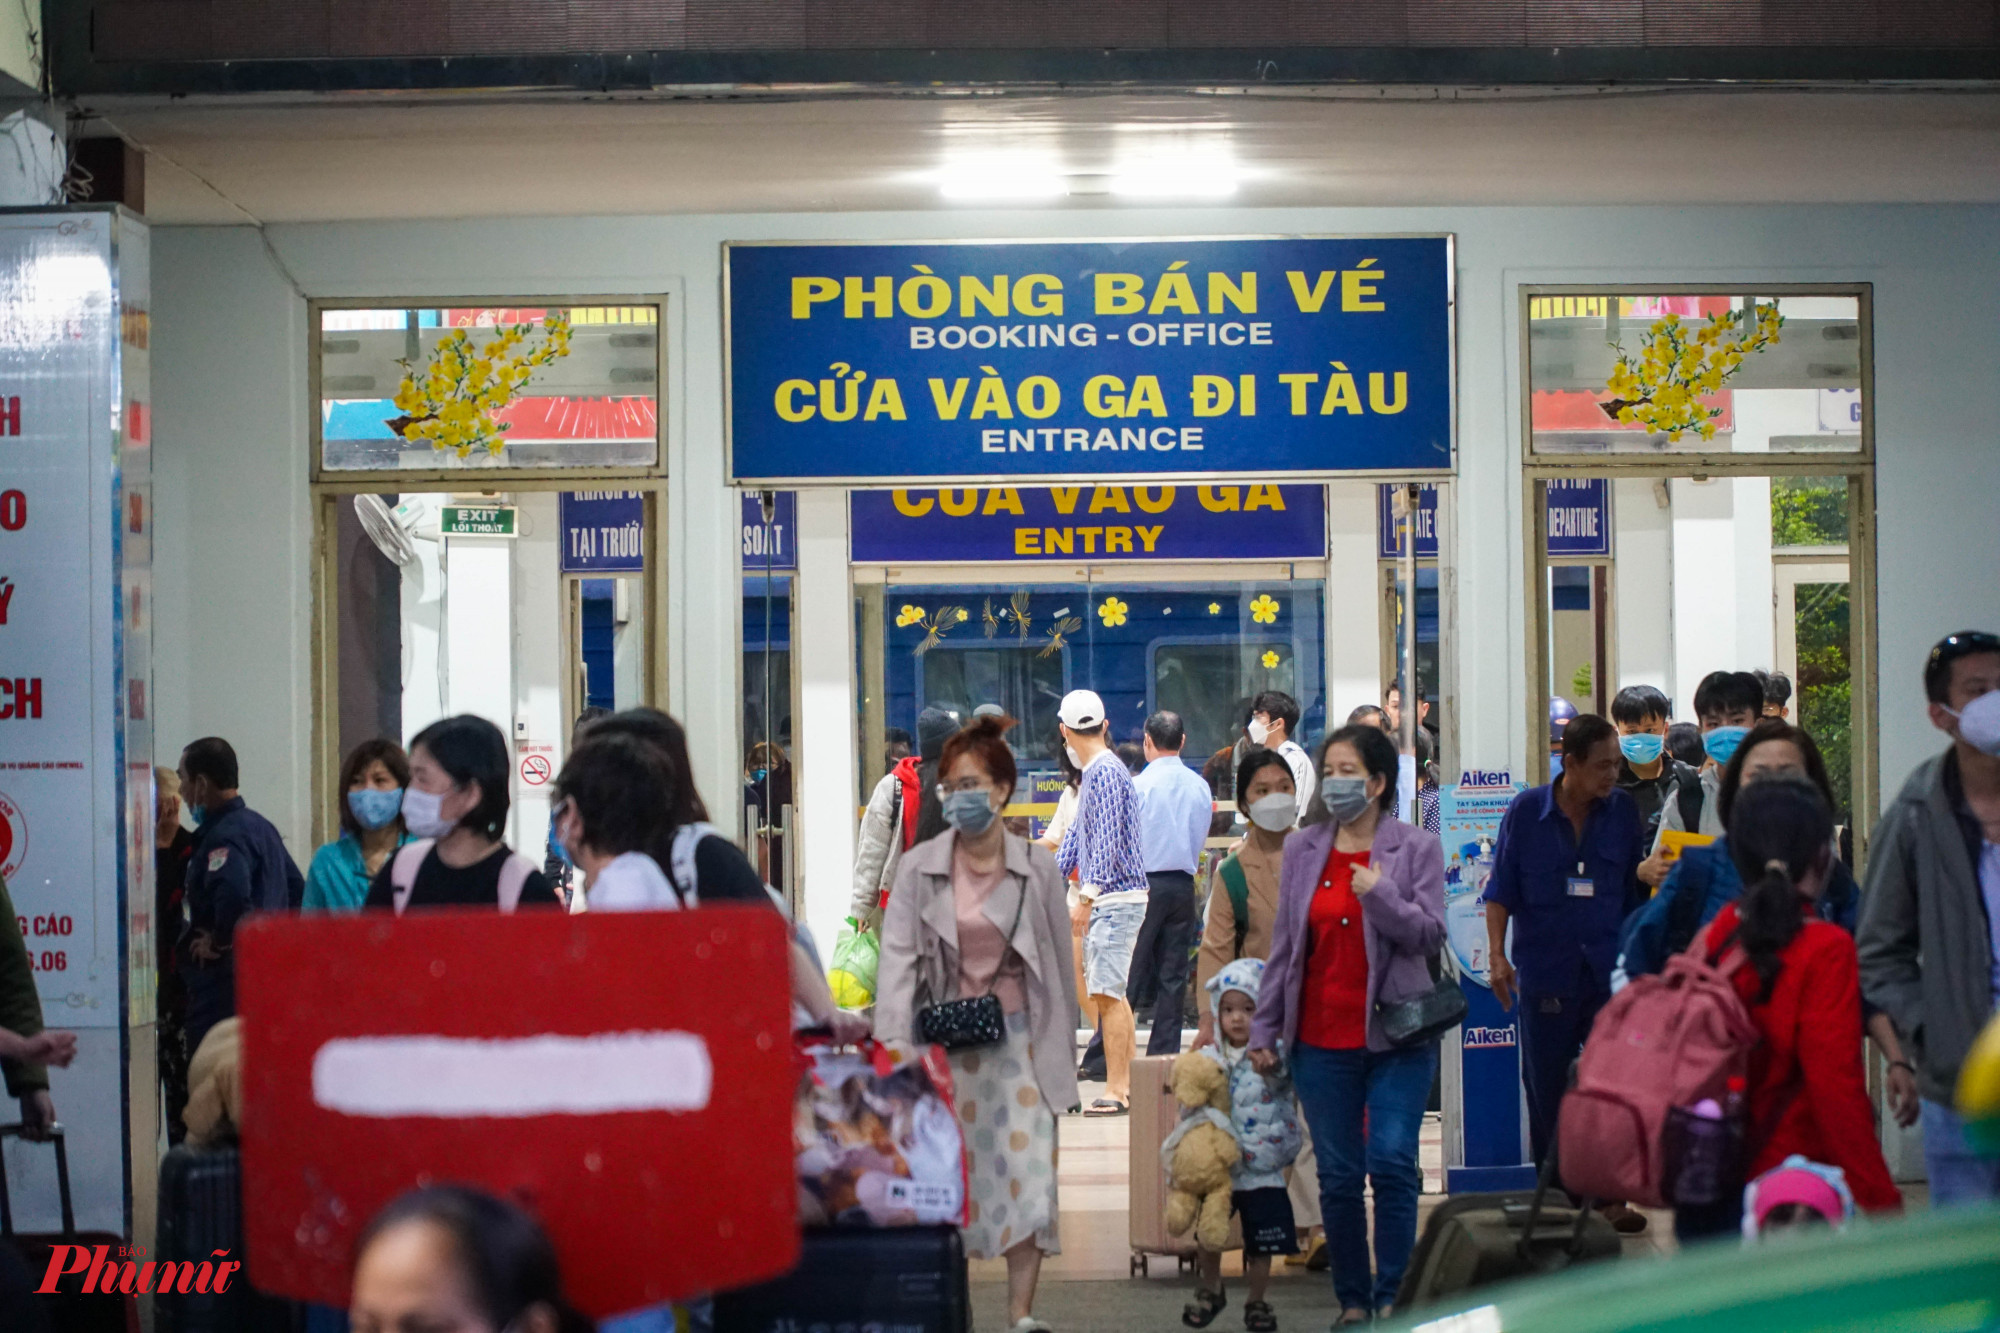 Theo ga Sài Gòn, dự kiến từ ngày 26/1 đến 29/1 (tức mùng 5 đến mùng 8 tháng Giêng) ga Sài Gòn sẽ đón khoảng 6.000 đến 8.000 lượt khách/ngày.